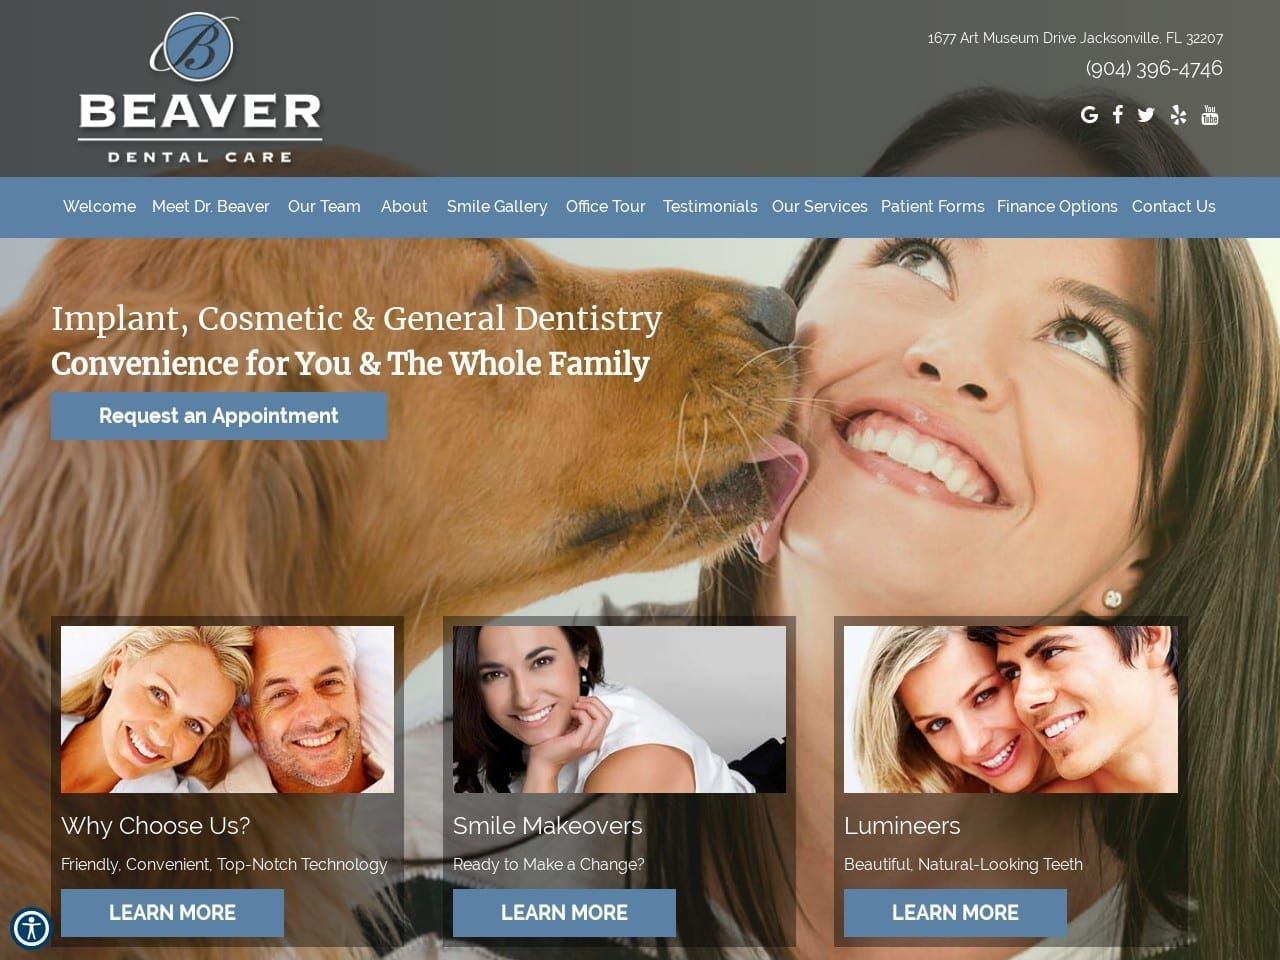 Beaver Dental Care Website Screenshot from beaverdental.com